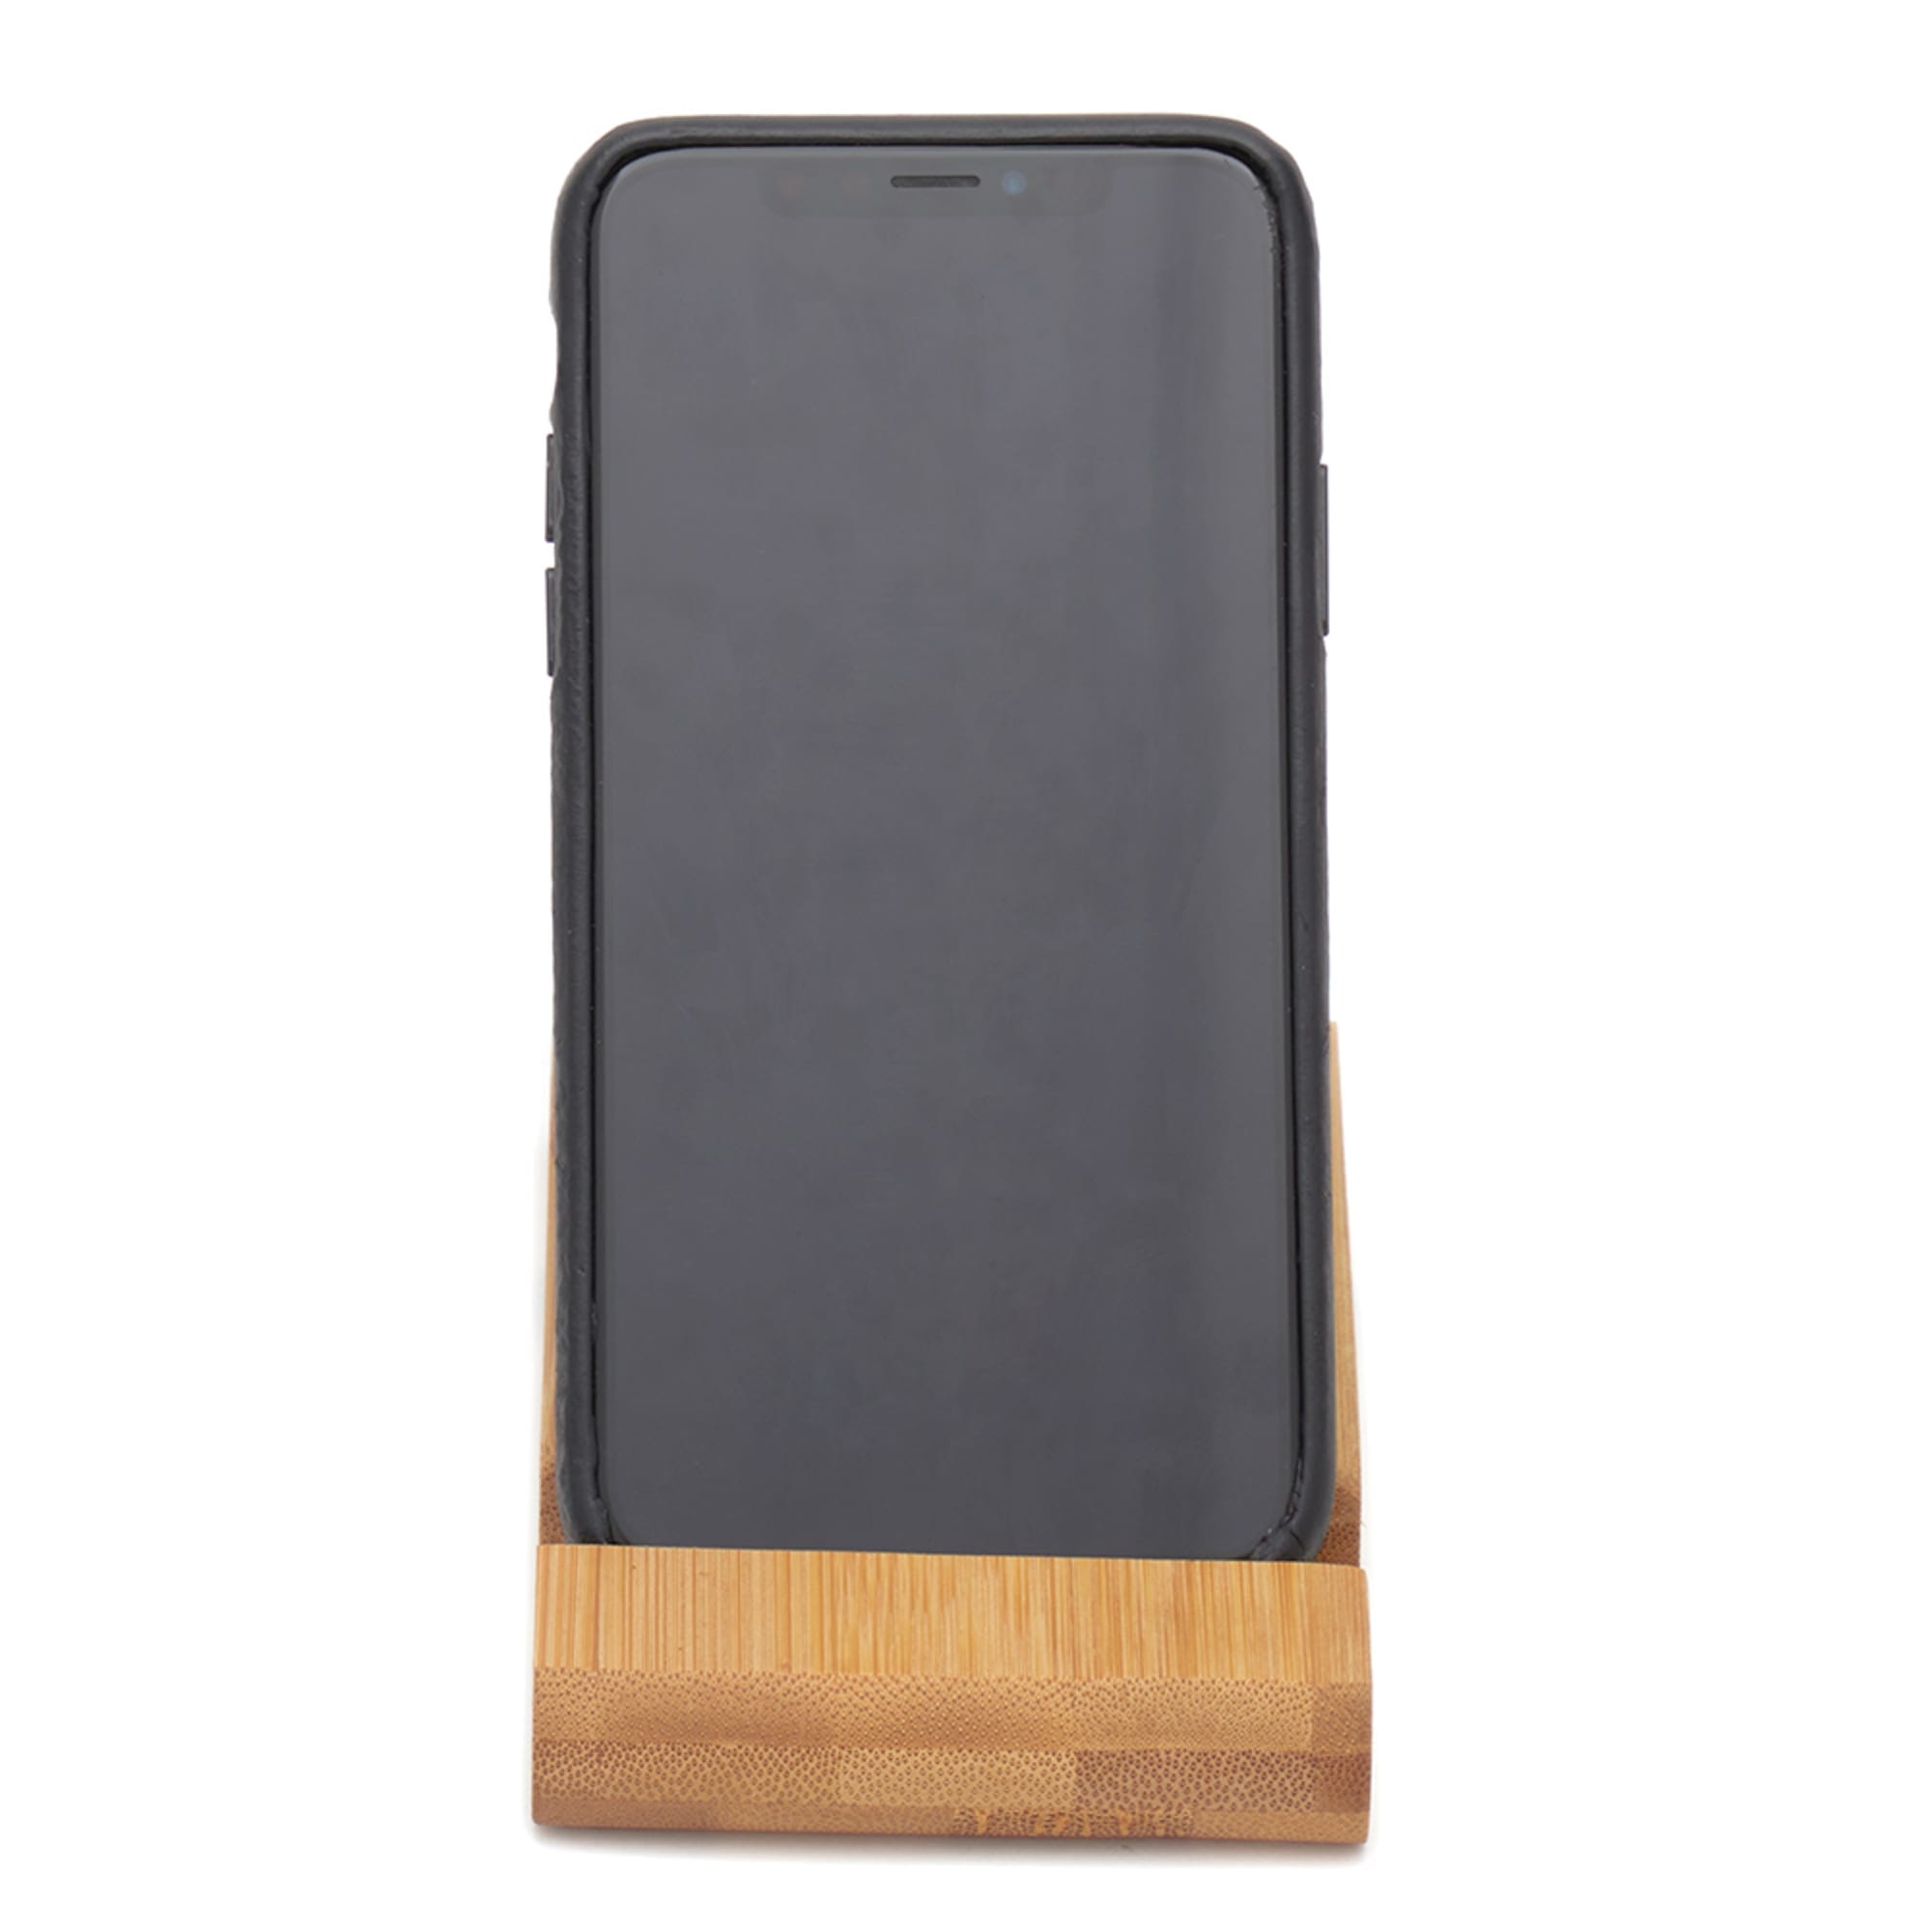 Home Basics Bamboo Desktop Cell Phone Holder $2.00 EACH, CASE PACK OF 24